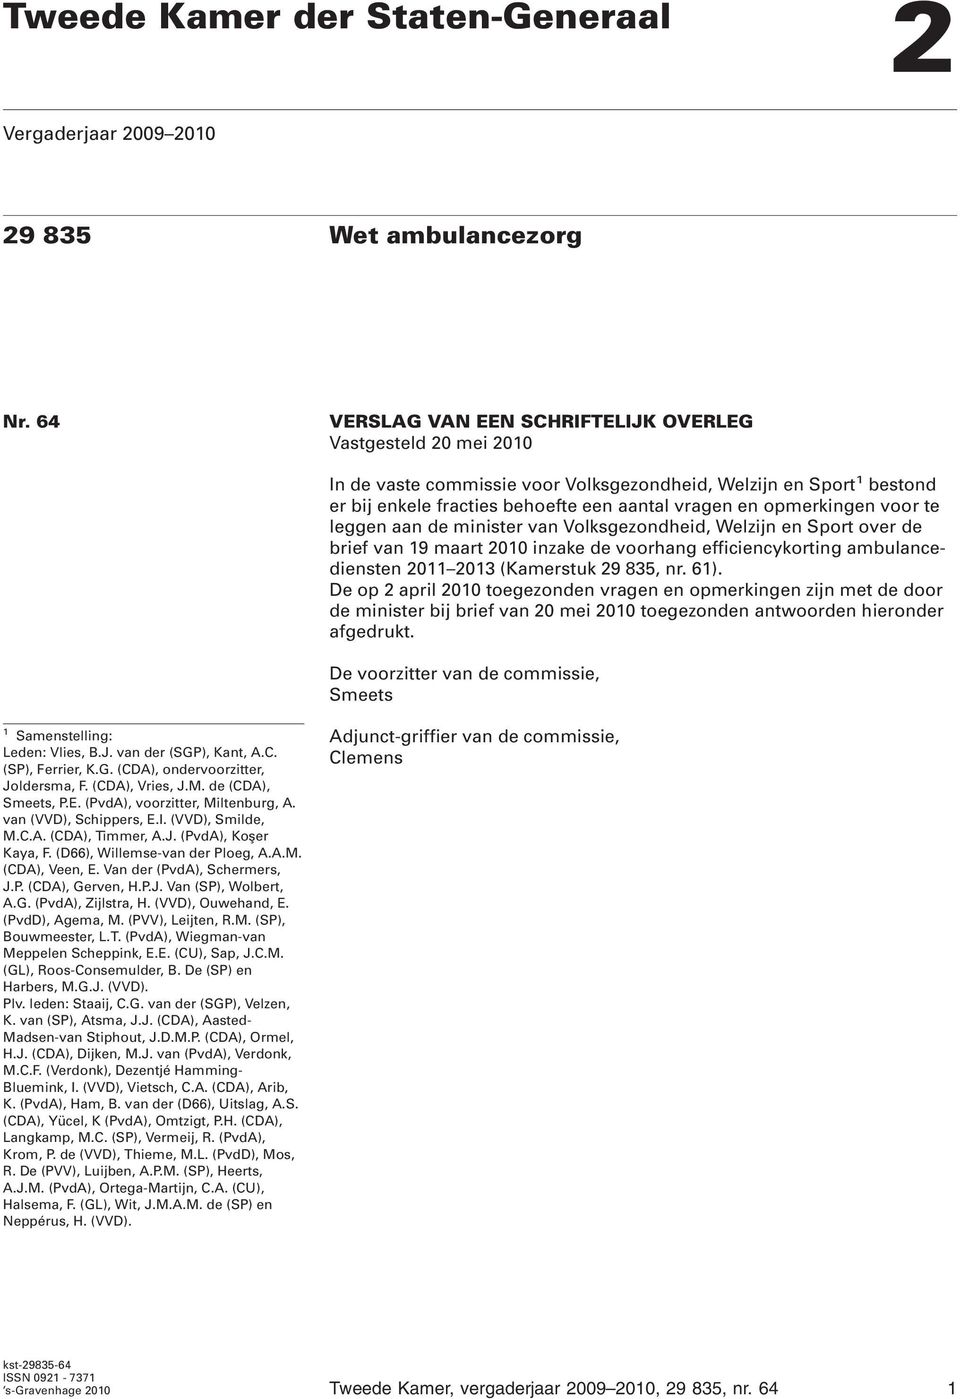 voor te leggen aan de minister van Volksgezondheid, Welzijn en Sport over de brief van 19 maart 2010 inzake de voorhang efficiencykorting ambulancediensten 2011 2013 (Kamerstuk 29 835, nr. 61).